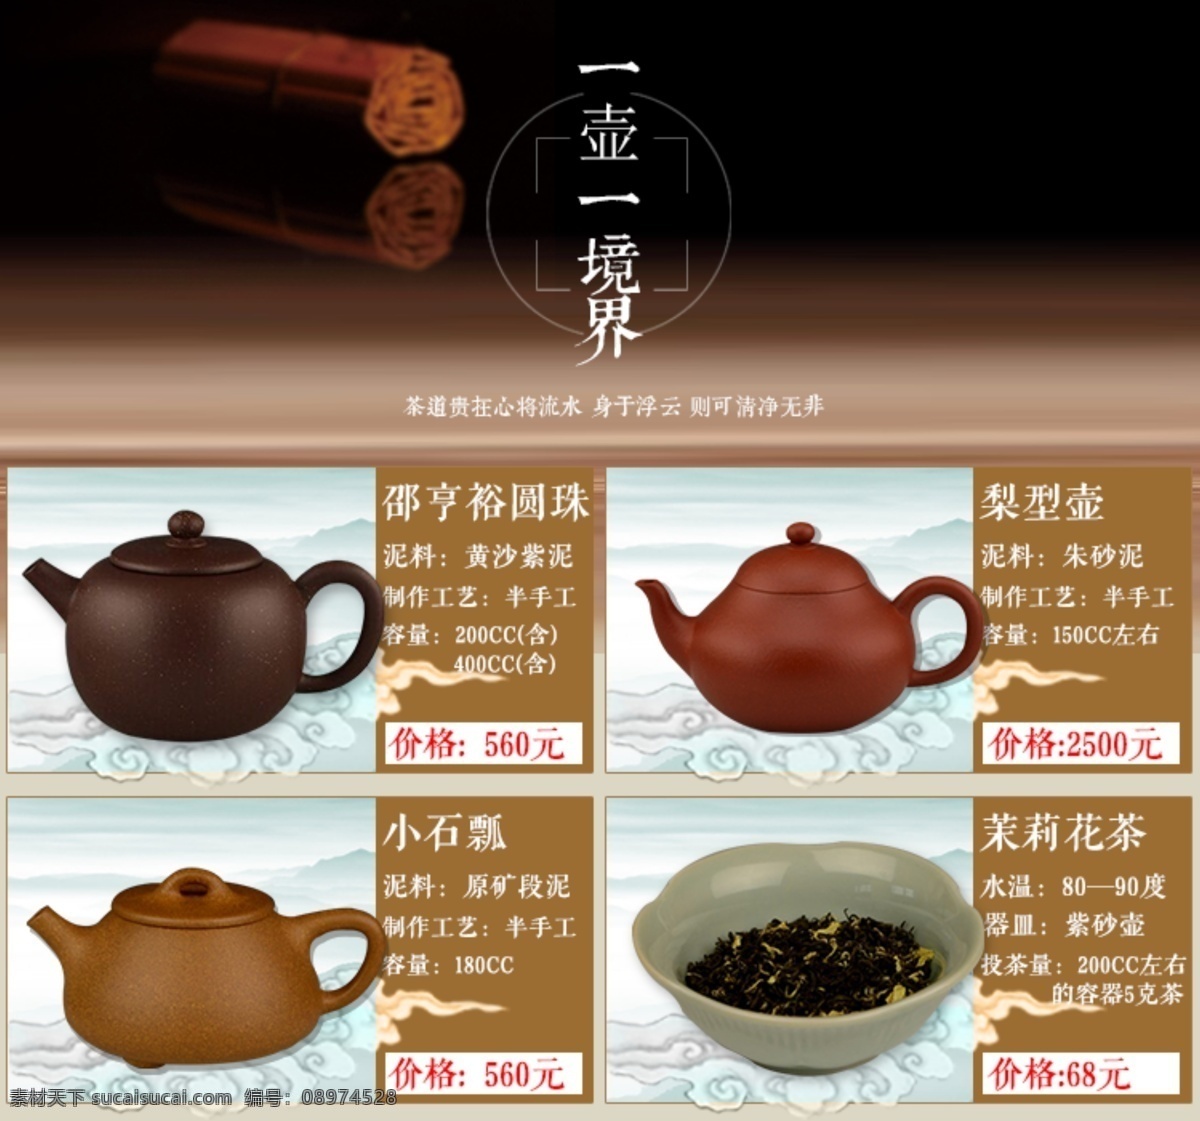 茶壶关联海报 茶壶 关联 海报 相关 中国风 白色